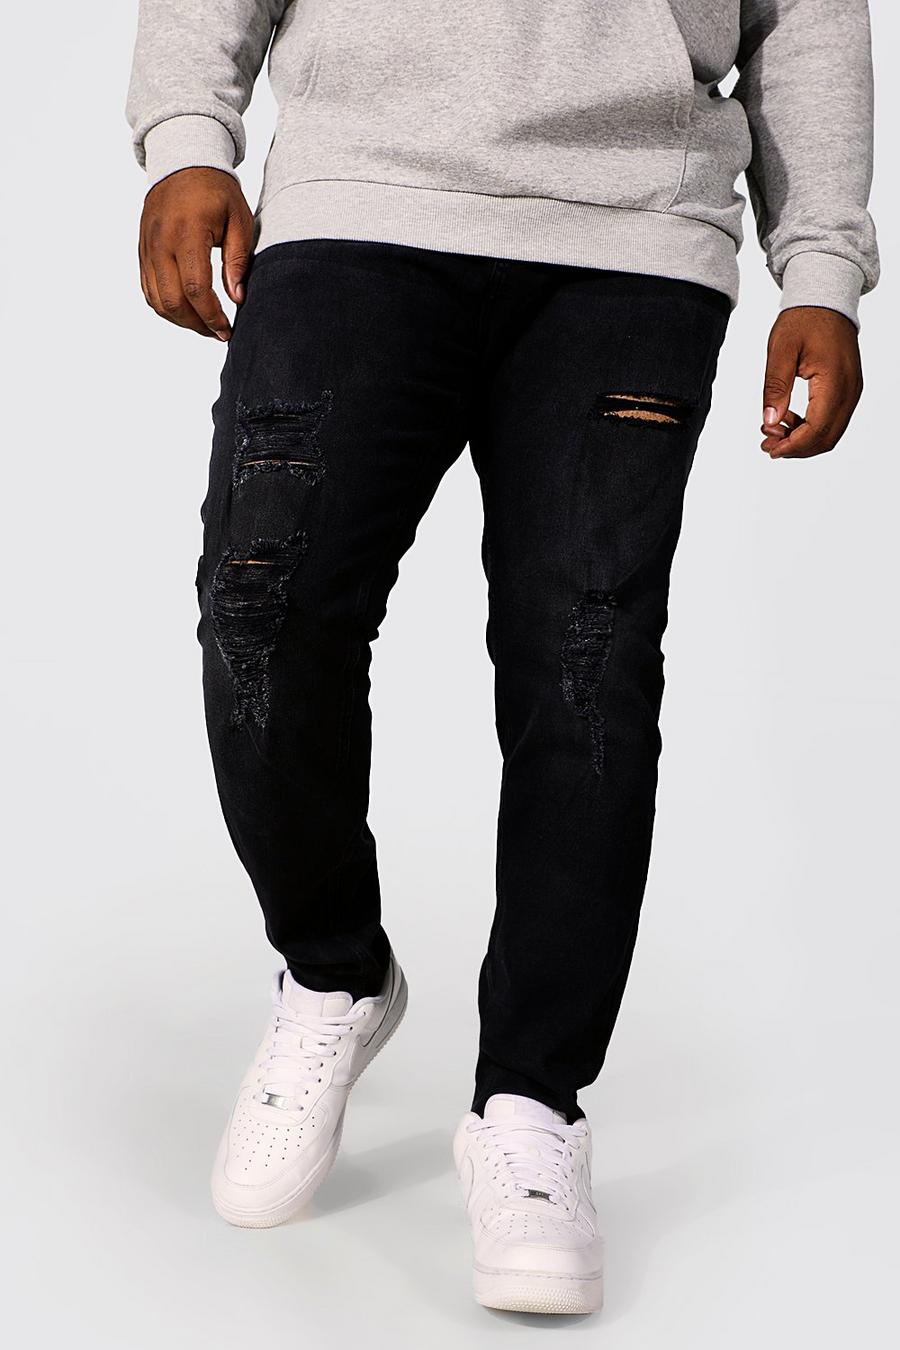 שחור black סקיני ג'ינס עם קרעים בהדפס חוזר, מידות גדולות